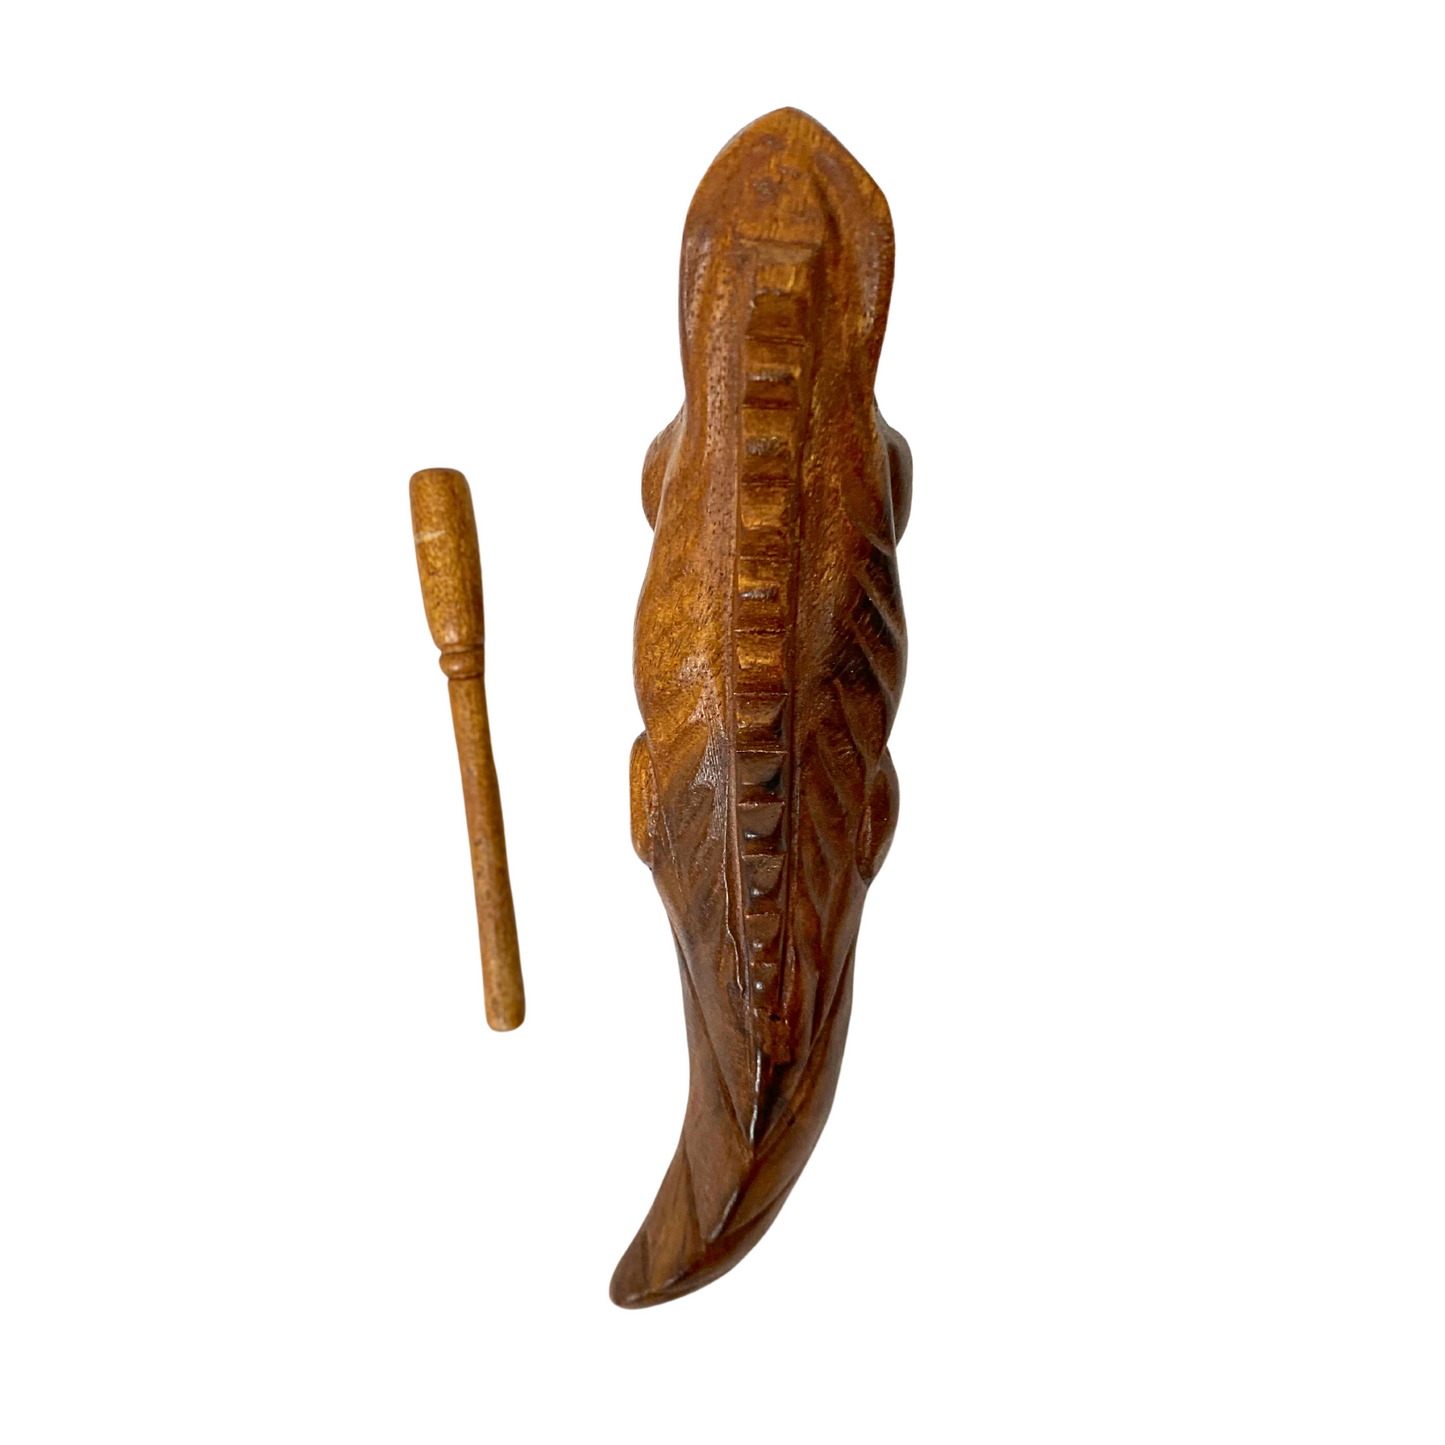 Wooden Iguana Guiro with Scraper, 8" - B-IGU8L